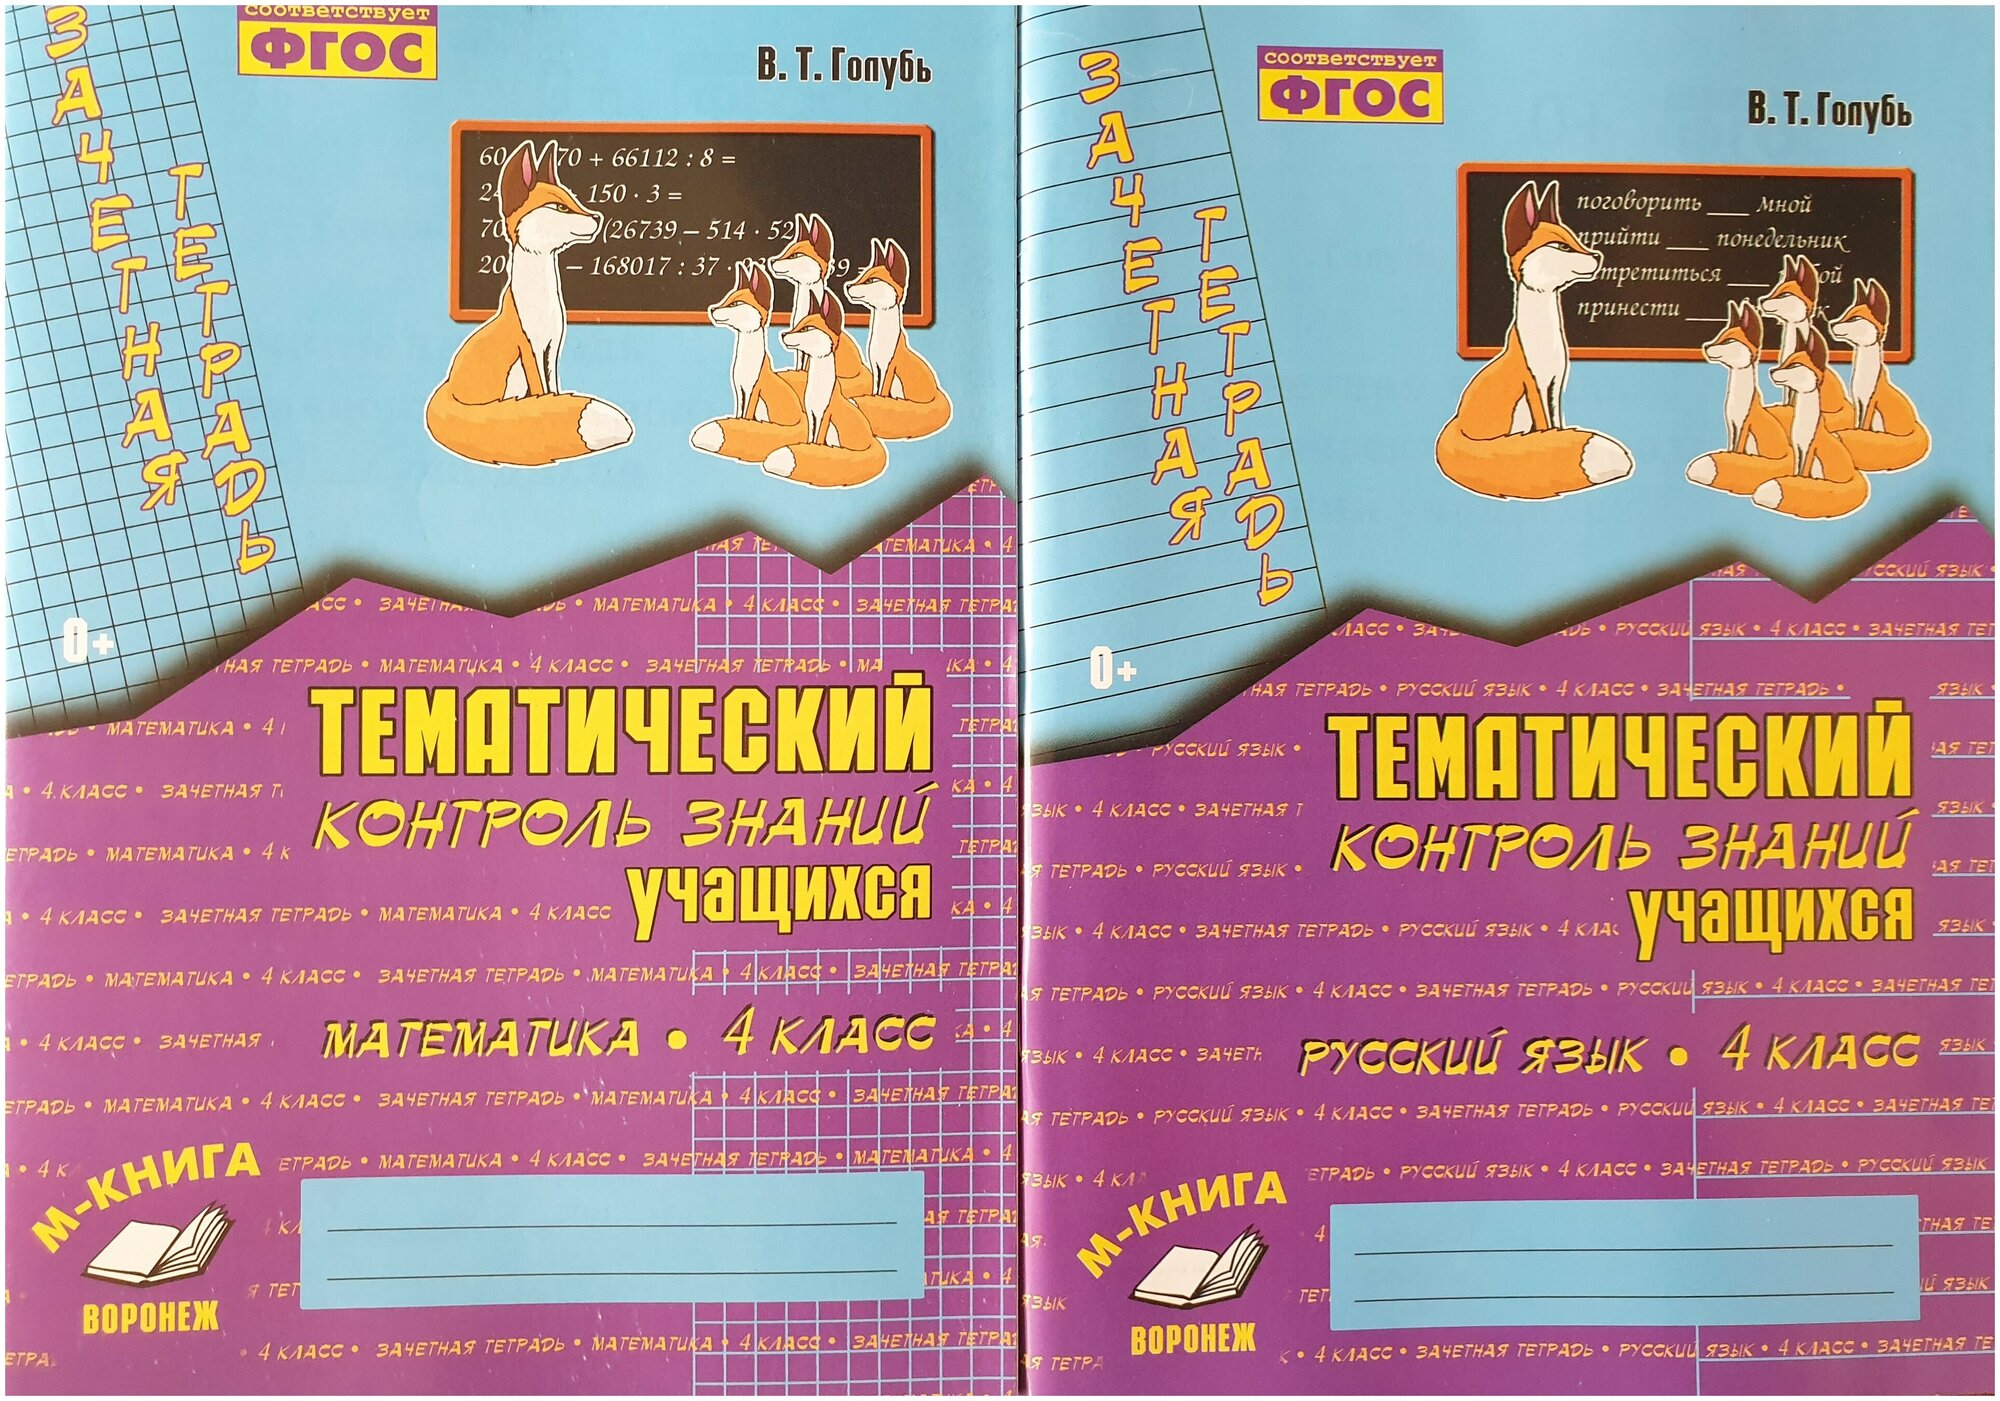 Тематический контроль 4 класс. Русский язык, математика -2 книги(Комплект 2022-2023 г. выпуска) Голубь Учитель